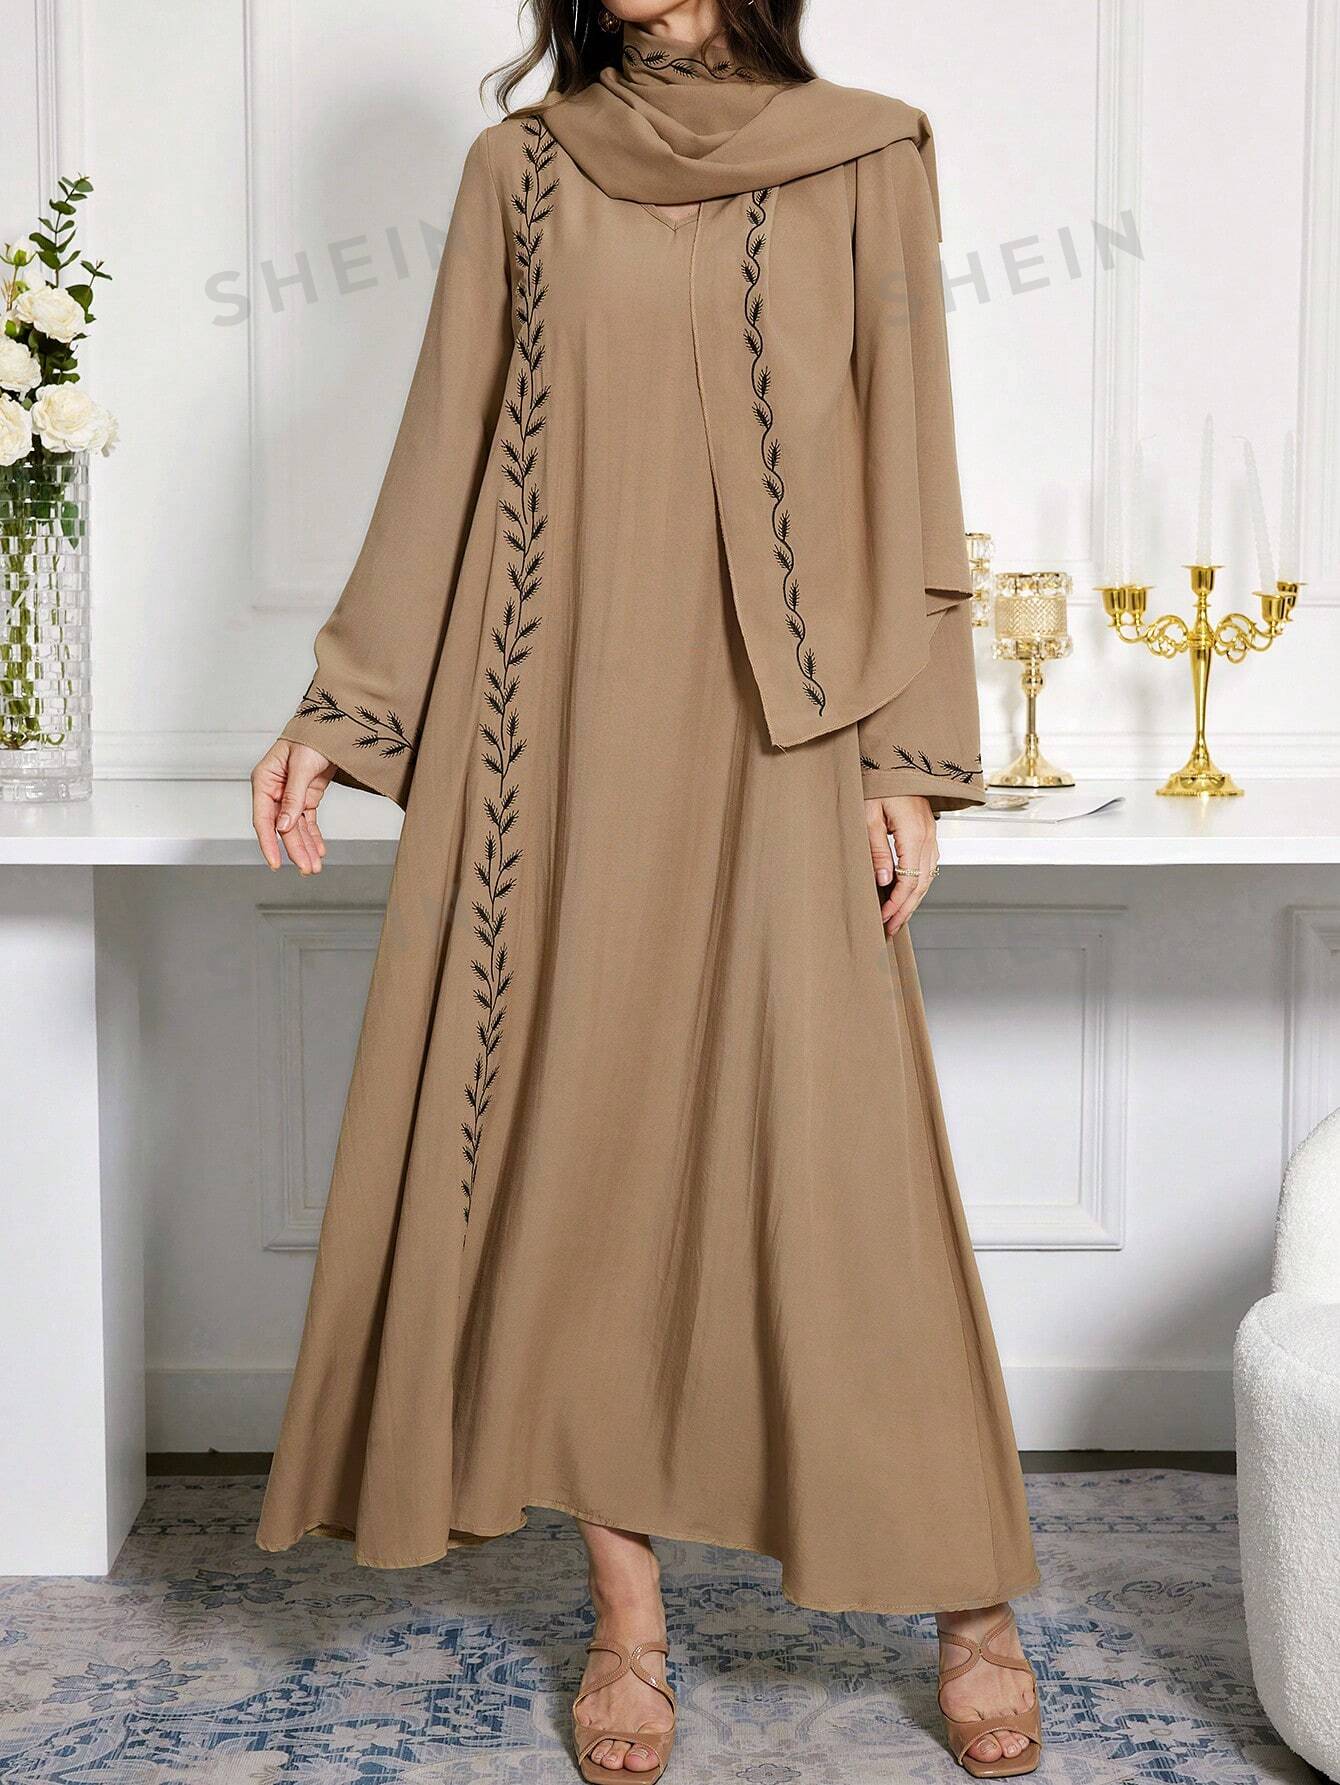 SHEIN Najma женское платье в арабском стиле с v-образным вырезом и вышивкой, коричневый женское длинное платье в мусульманском стиле длинное платье в арабском стиле вечернее платье в арабском стиле